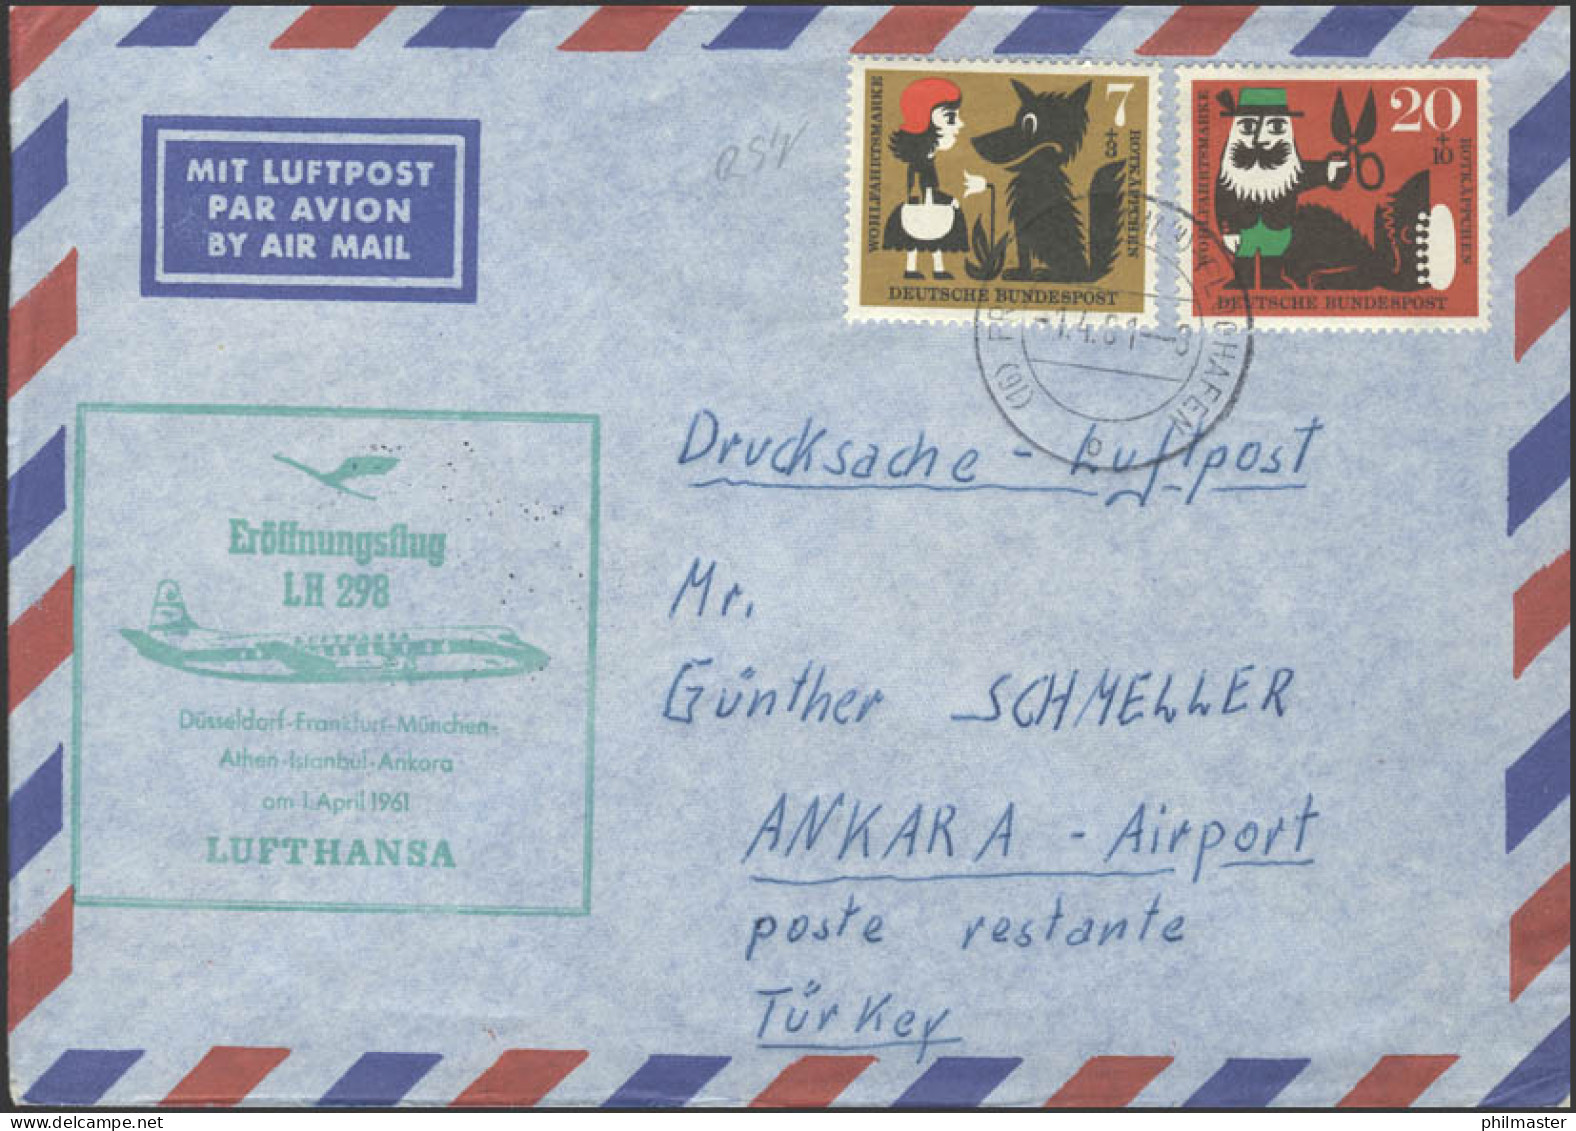 Eröffnungsflug LH 298 Düsseldorf-Frankfurt-Ankara Am 01.04.1961 - Other (Air)